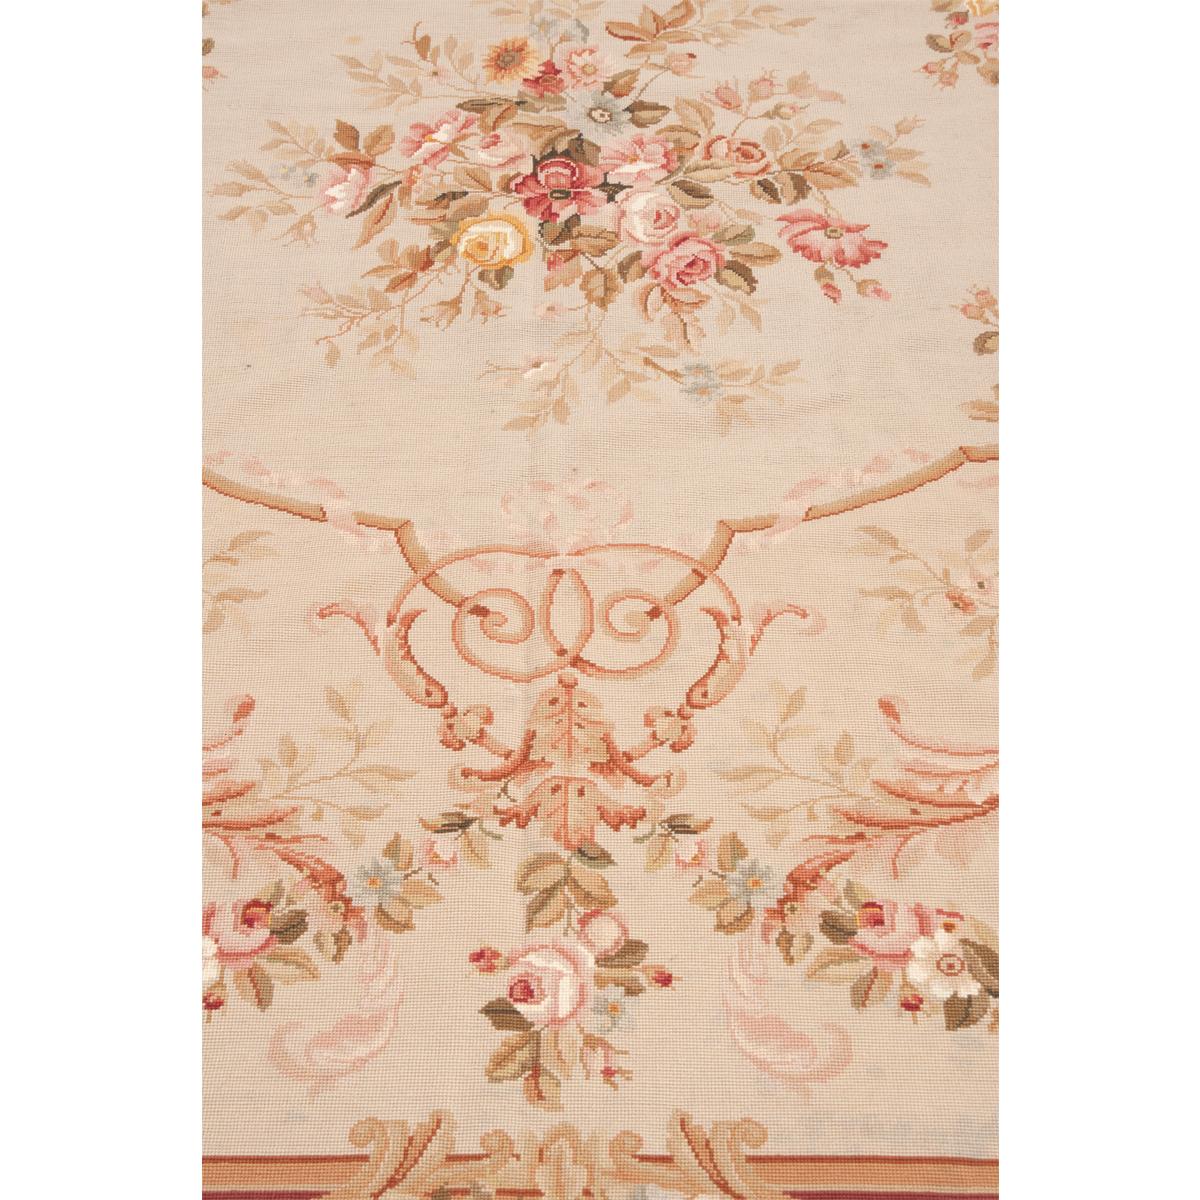 Schönes Beispiel für einen Aubusson-Teppich. Eine fantastische Darstellung von Blumen- und Schneckenmustern, handgewebt aus Frankreich. Viele Erdtöne: Brauntöne, Grüntöne, Beigetöne, Rost- und Rottöne, Mauve- und Rosatöne und vieles mehr in sanften